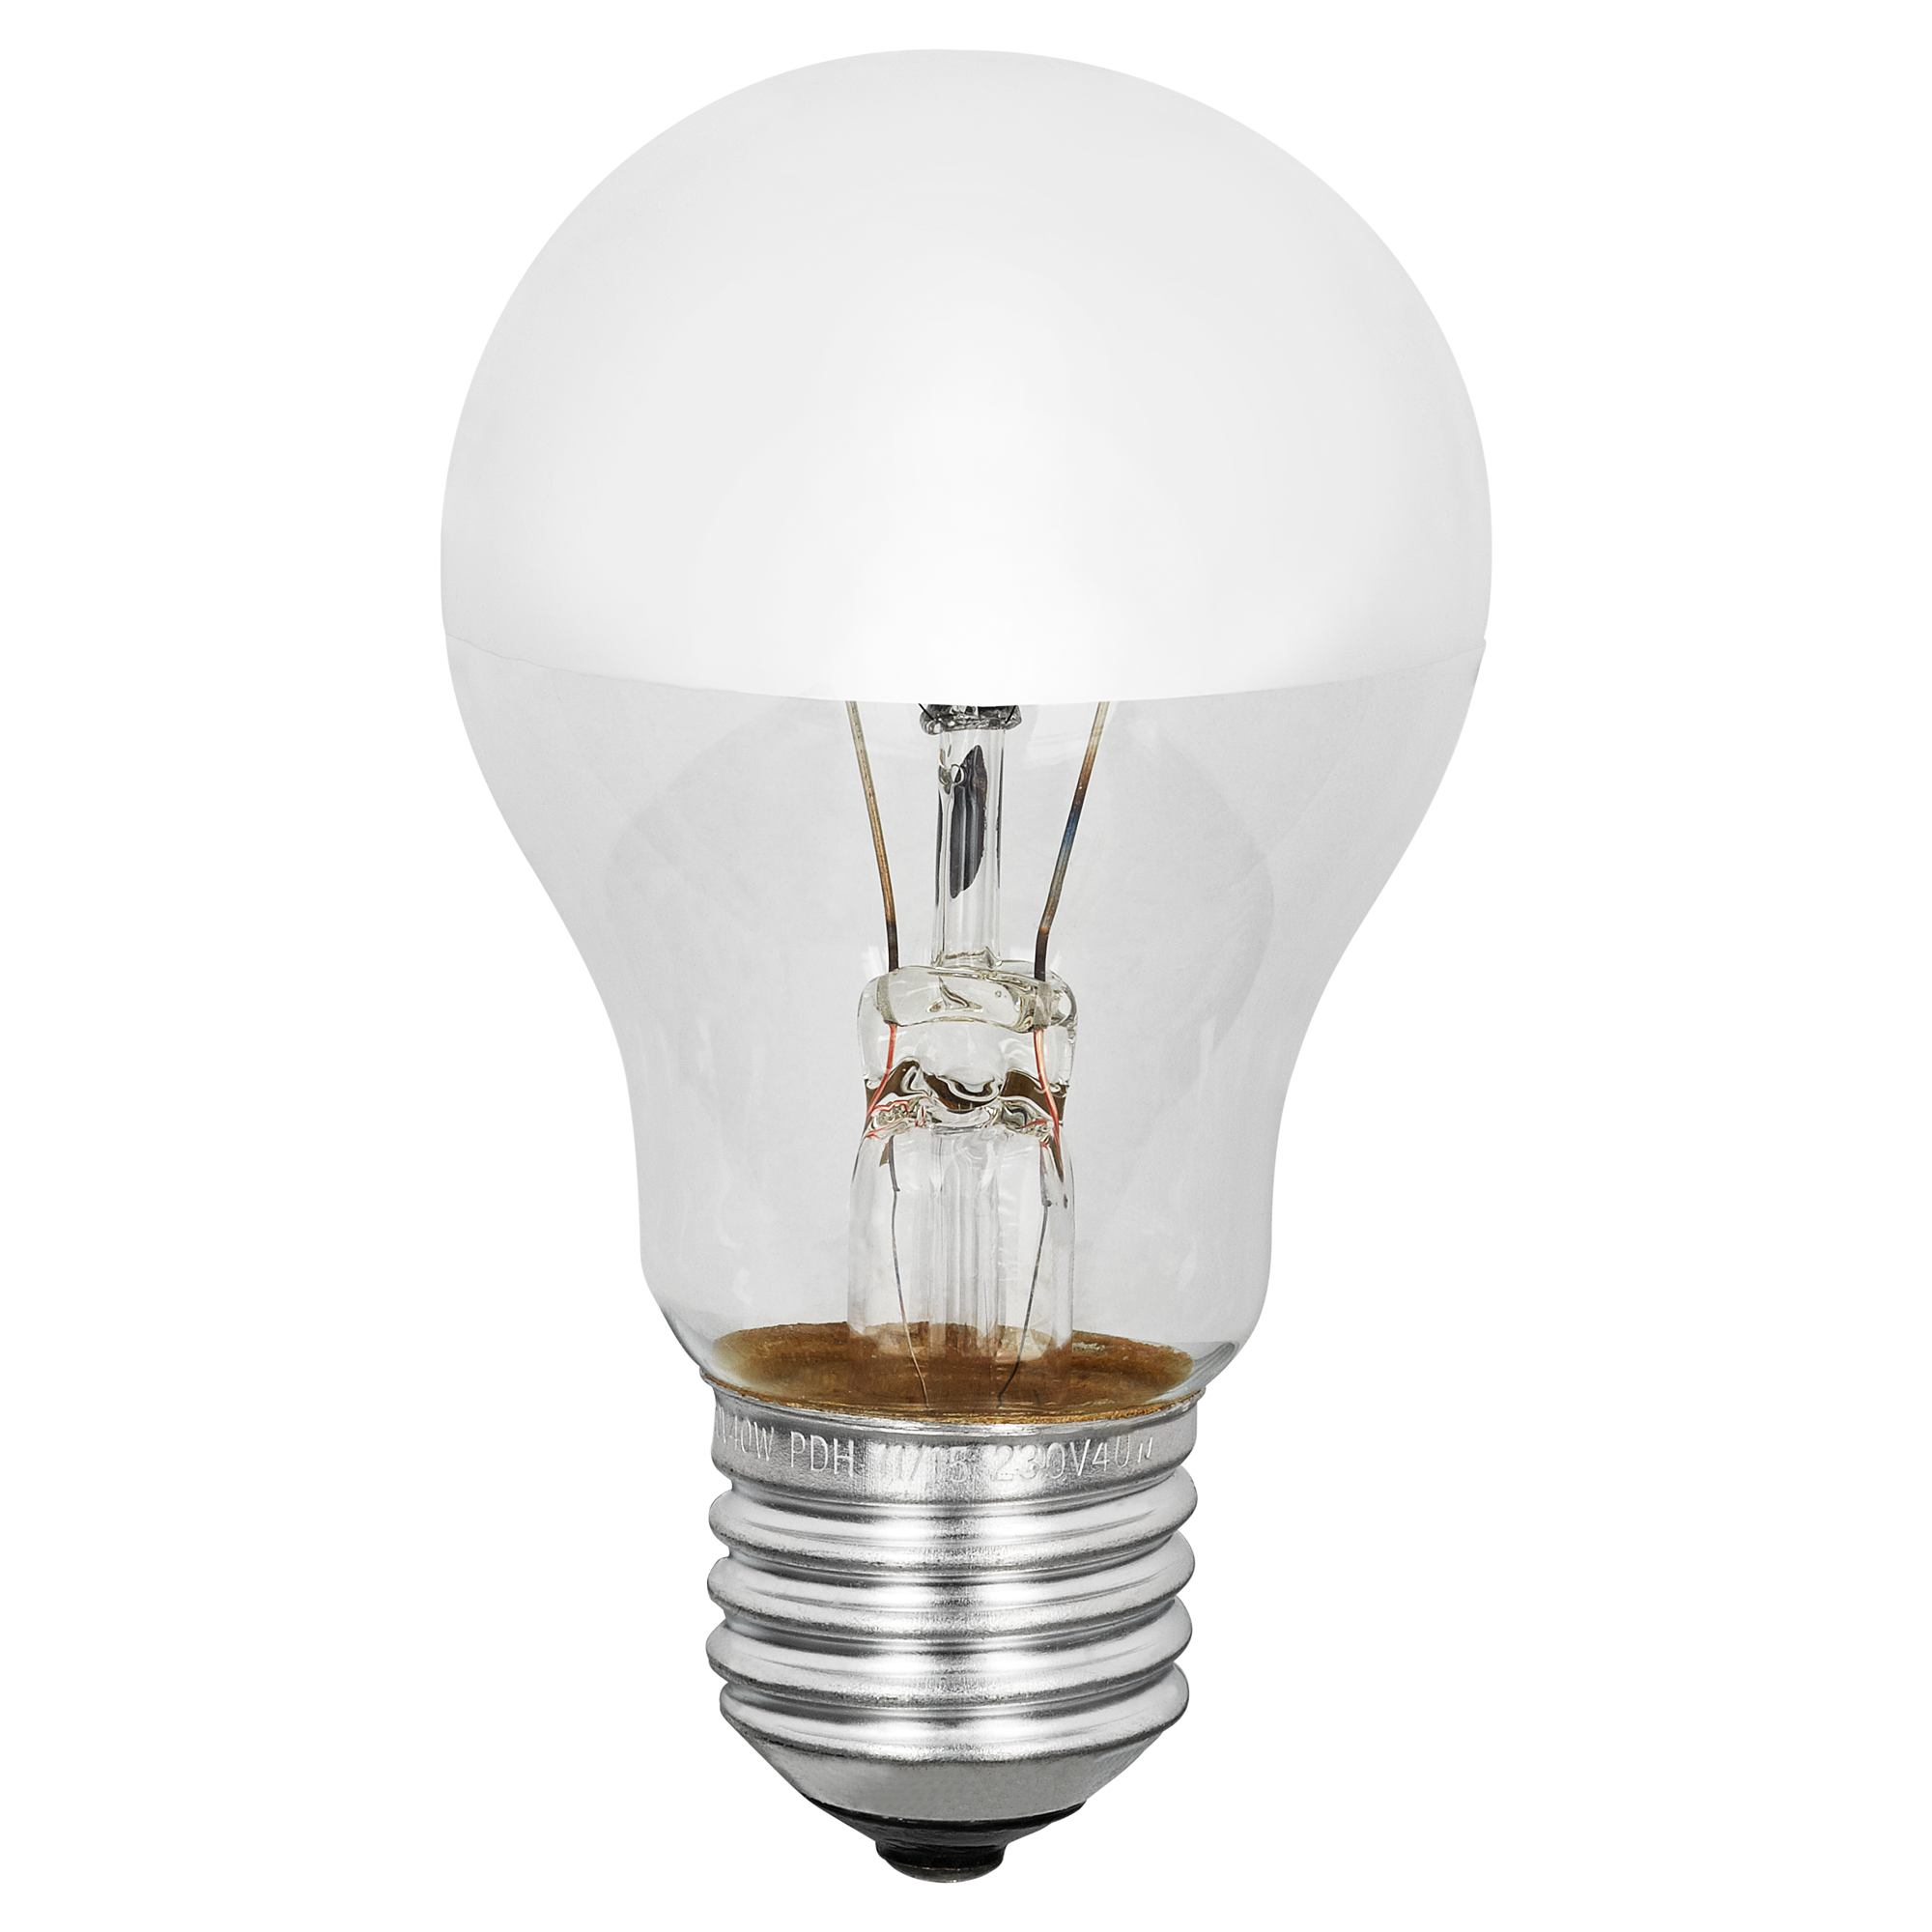 Kopfspiegellampe E27 40 W + product picture